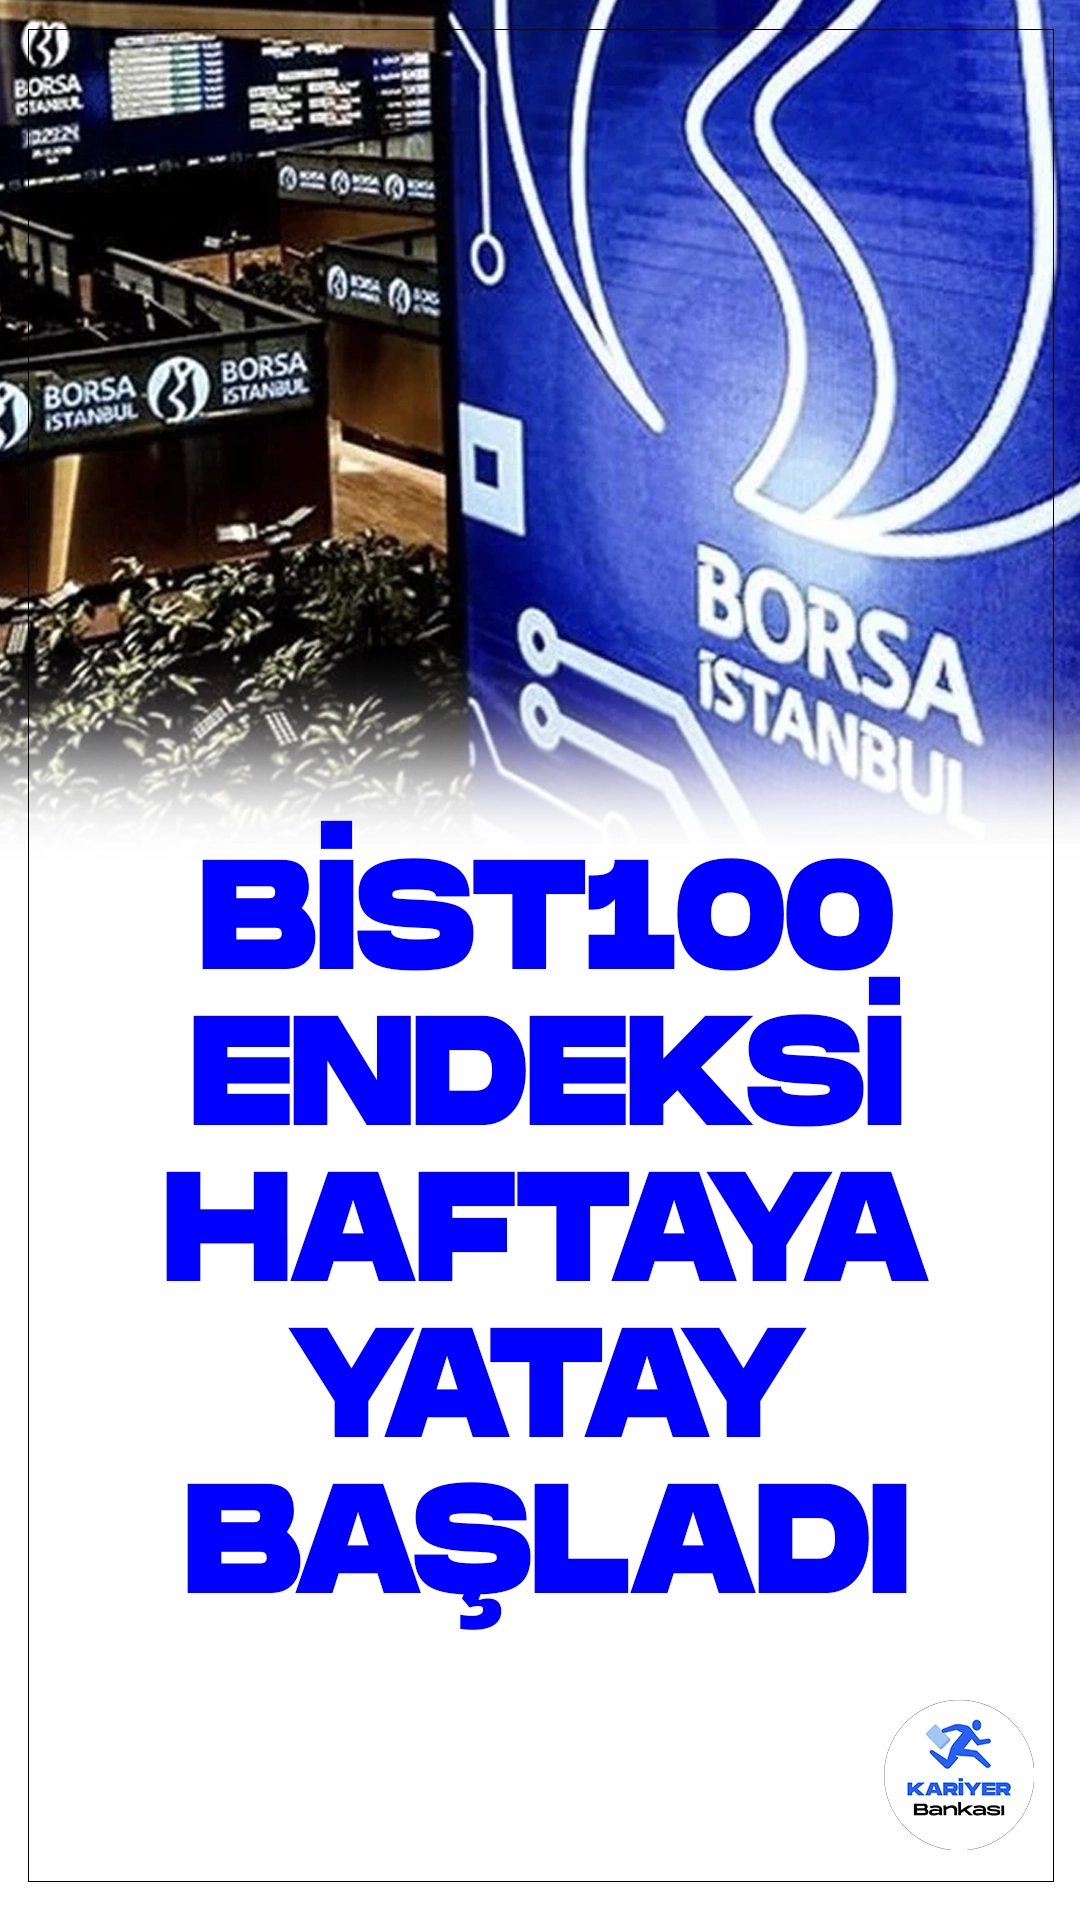 Borsa İstanbul'da Haftaya Yatay Başlangıç: BIST 100 Endeksi 9.113,27 Puandan Açıldı.Borsa İstanbul'da yeni hafta, yatay bir seyirle başladı. BIST 100 endeksi, 9.113,27 puandan açılış yaptı, önemli bir değişiklik olmadı.